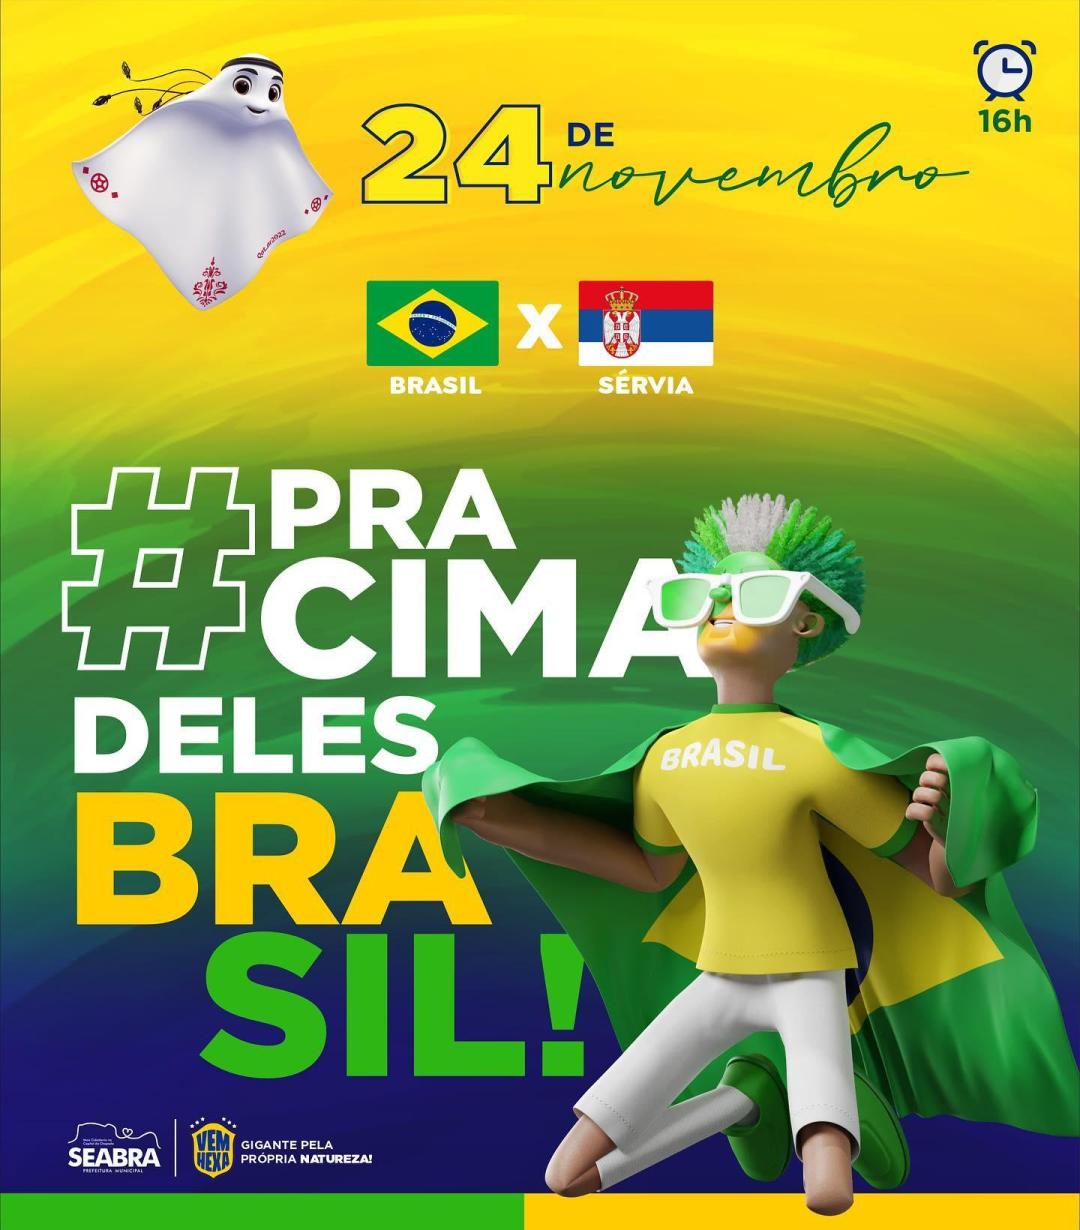 Primeiro jogo do Brasil na Copa do mundo hoje!